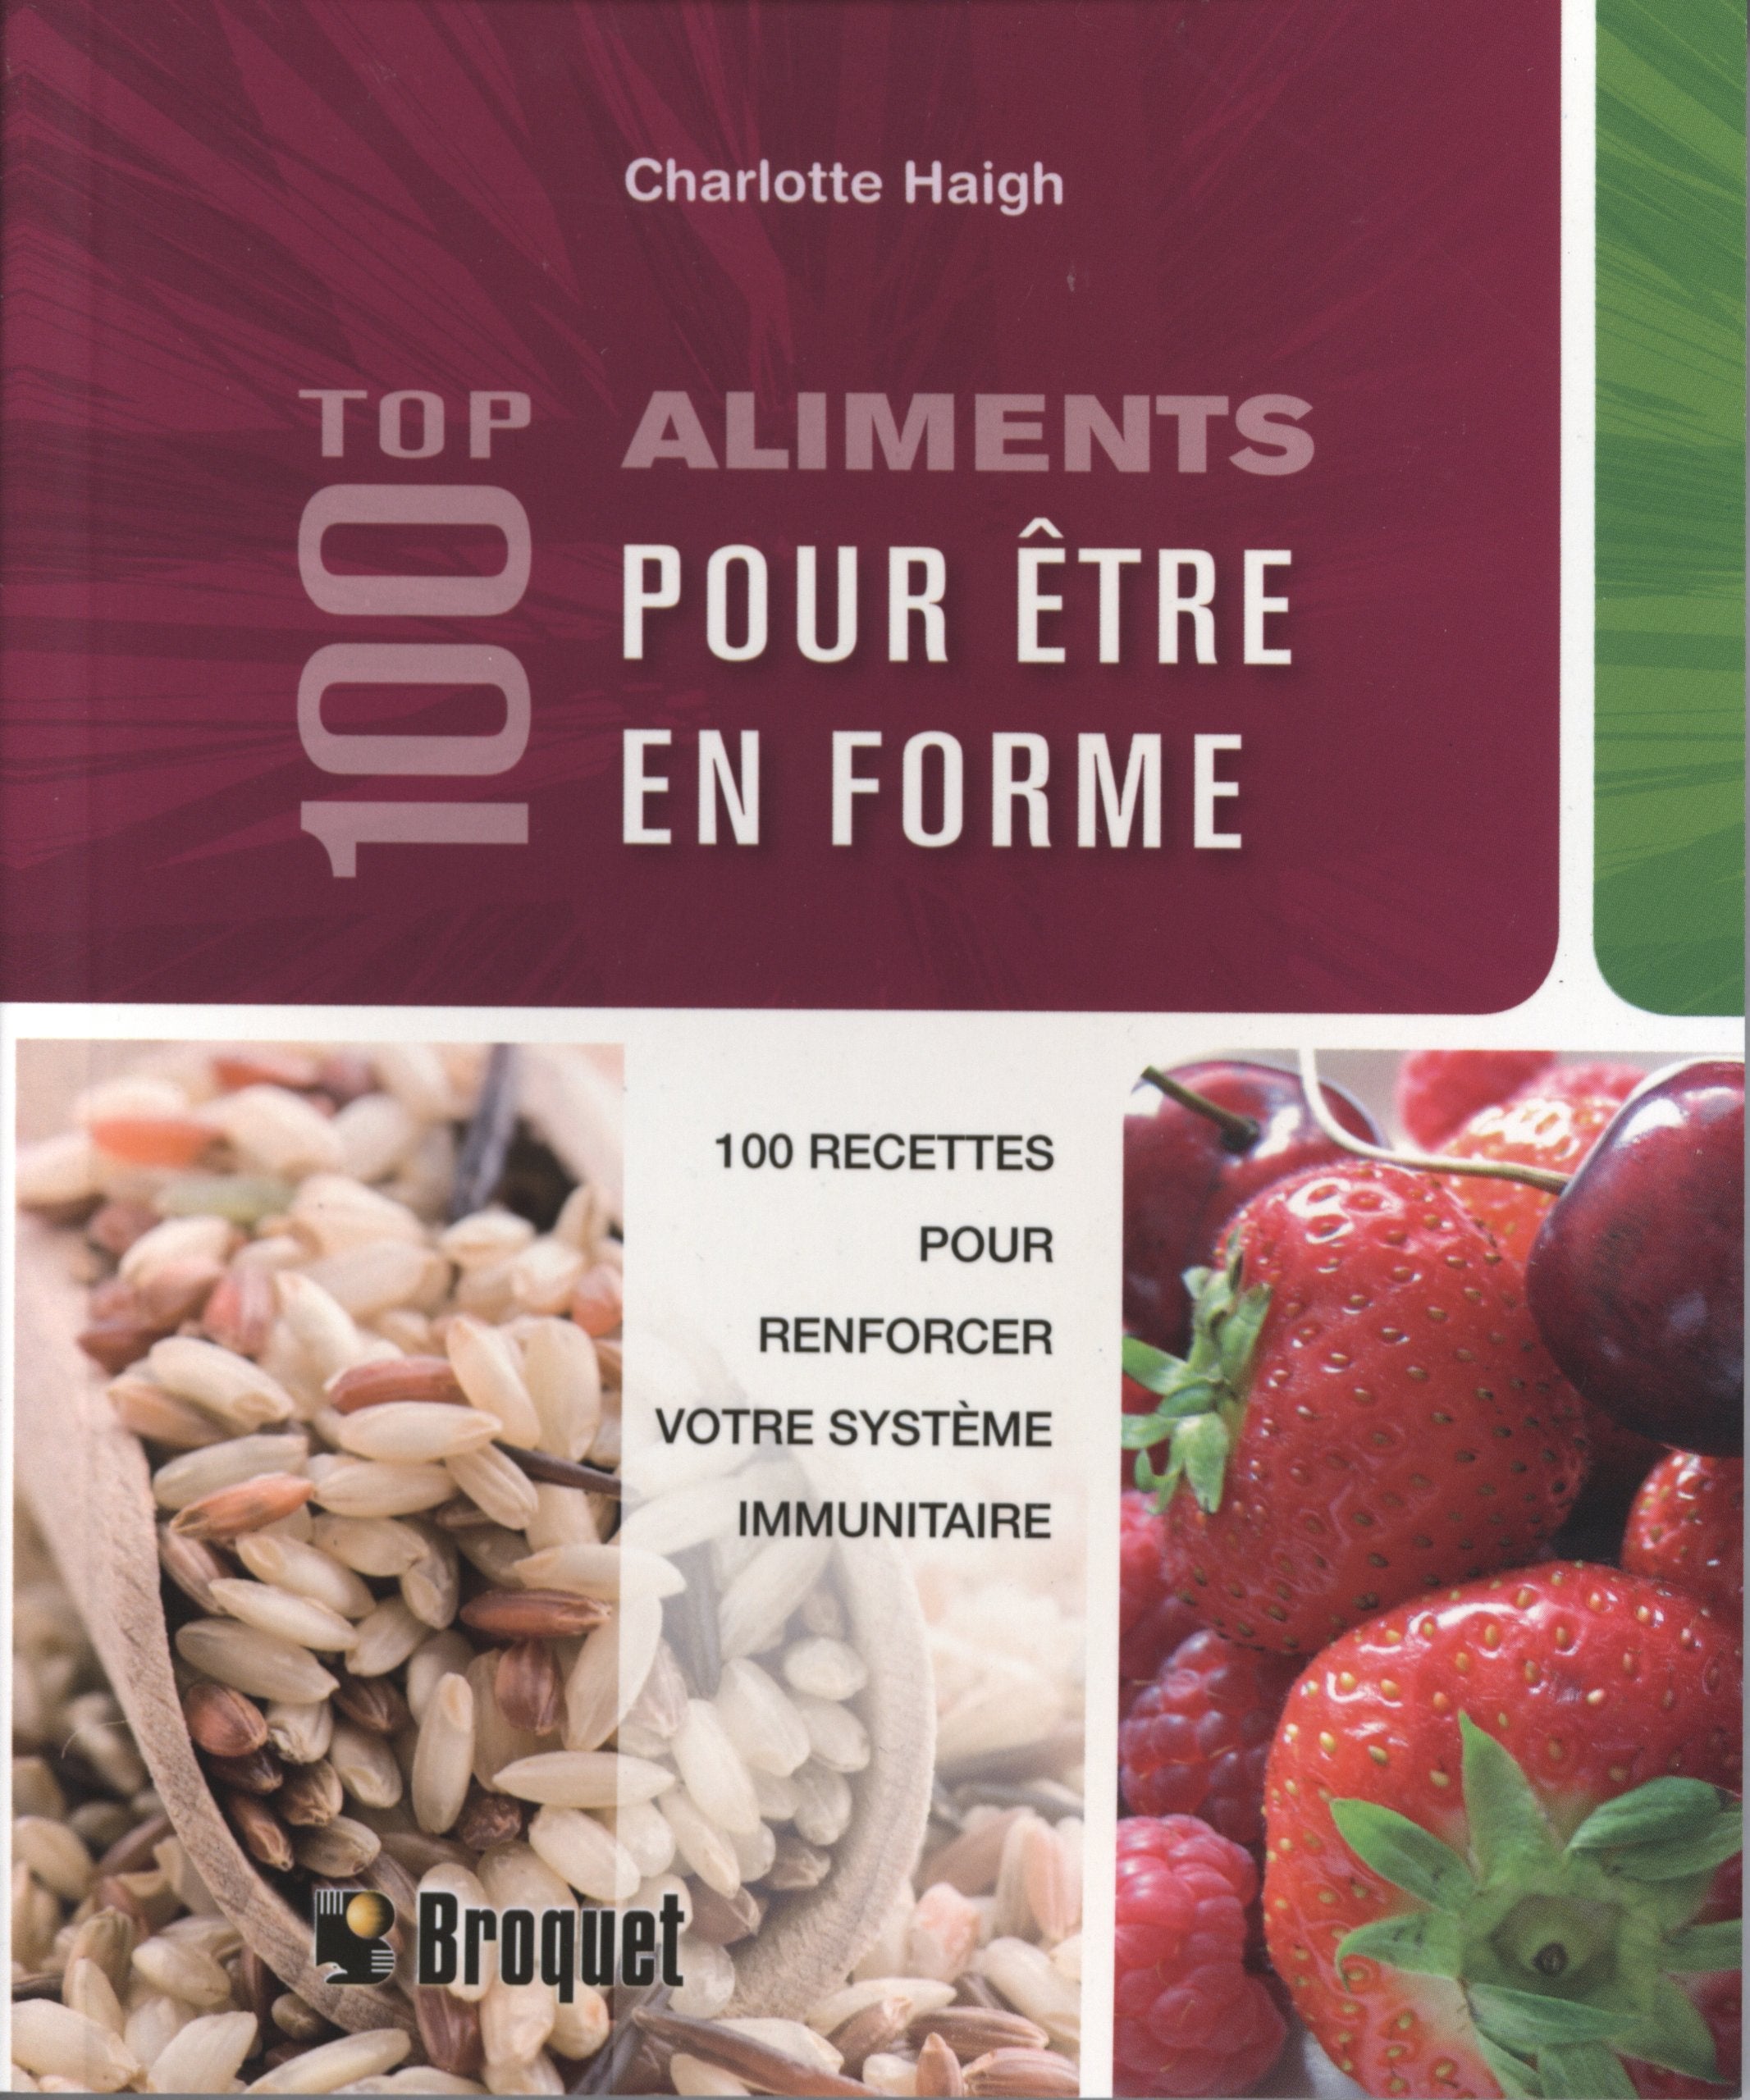 Livre ISBN 289654237X 100 aliments pour être en forme (Charlotte Haigh)